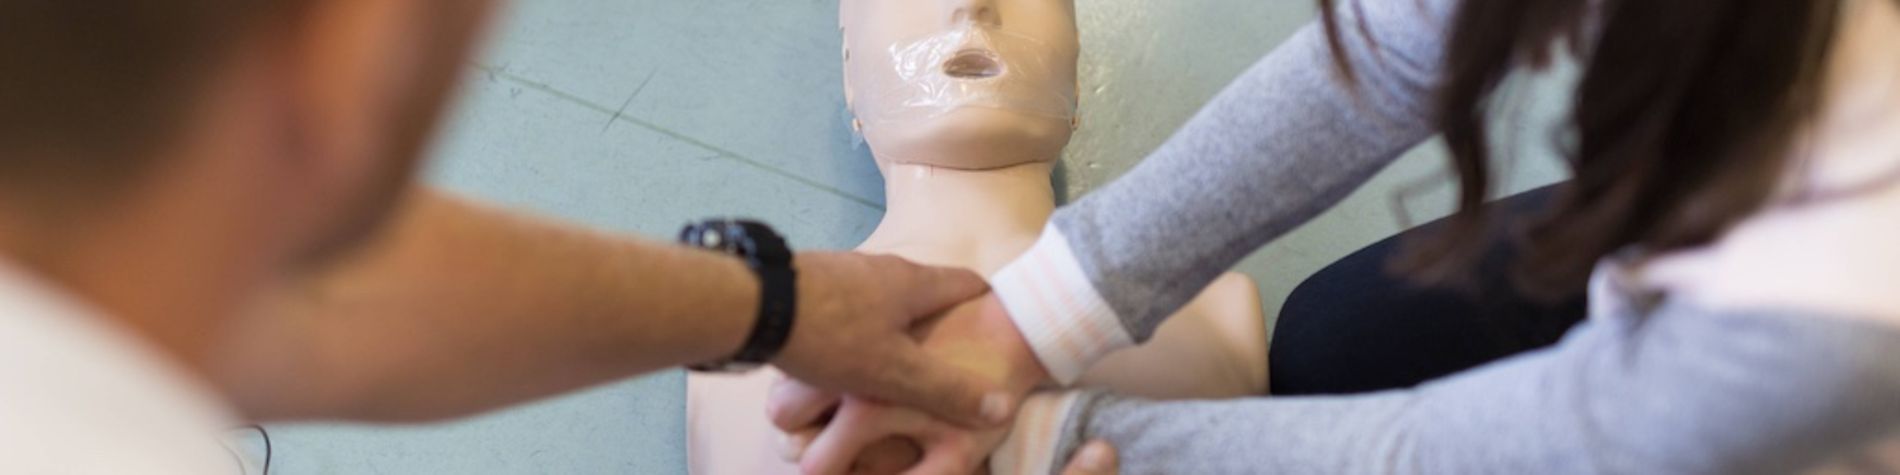 Eine Schülerin übt eine Herzdruckmassage an einer Puppe.